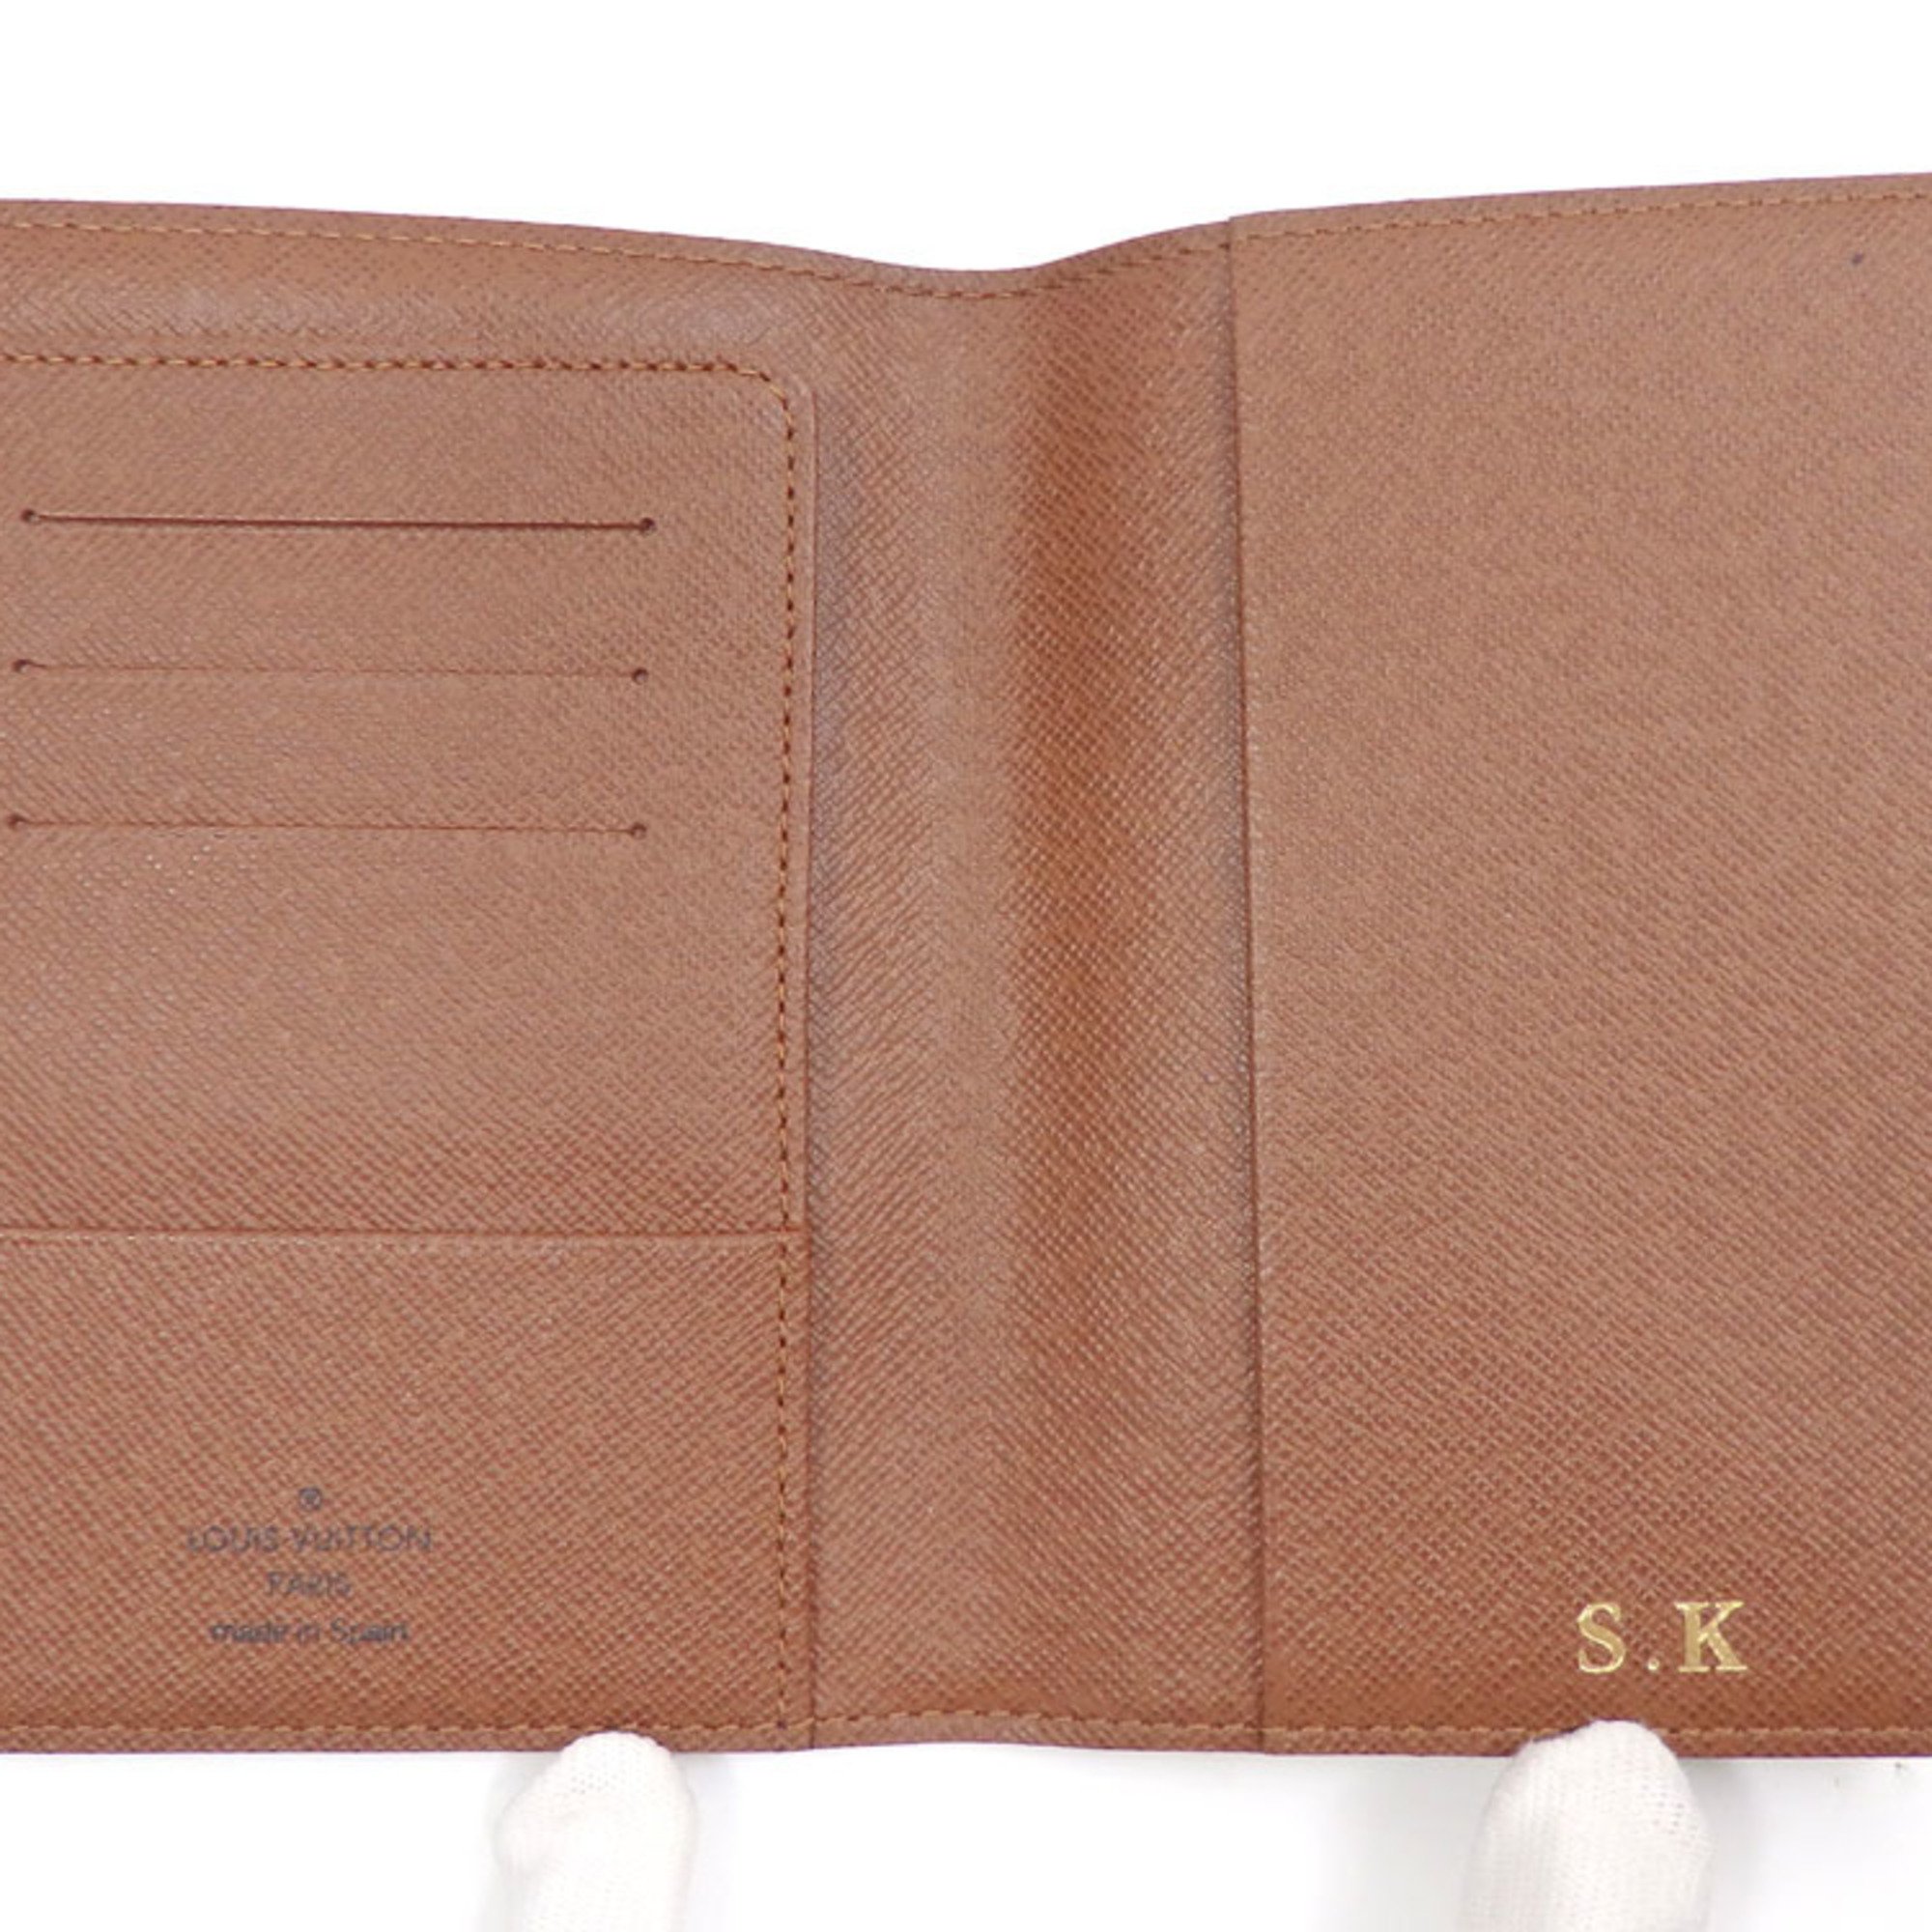 Louis Vuitton Passport Case Monogram Couverture M60180 Women's Men's Unisex Cover with Initials